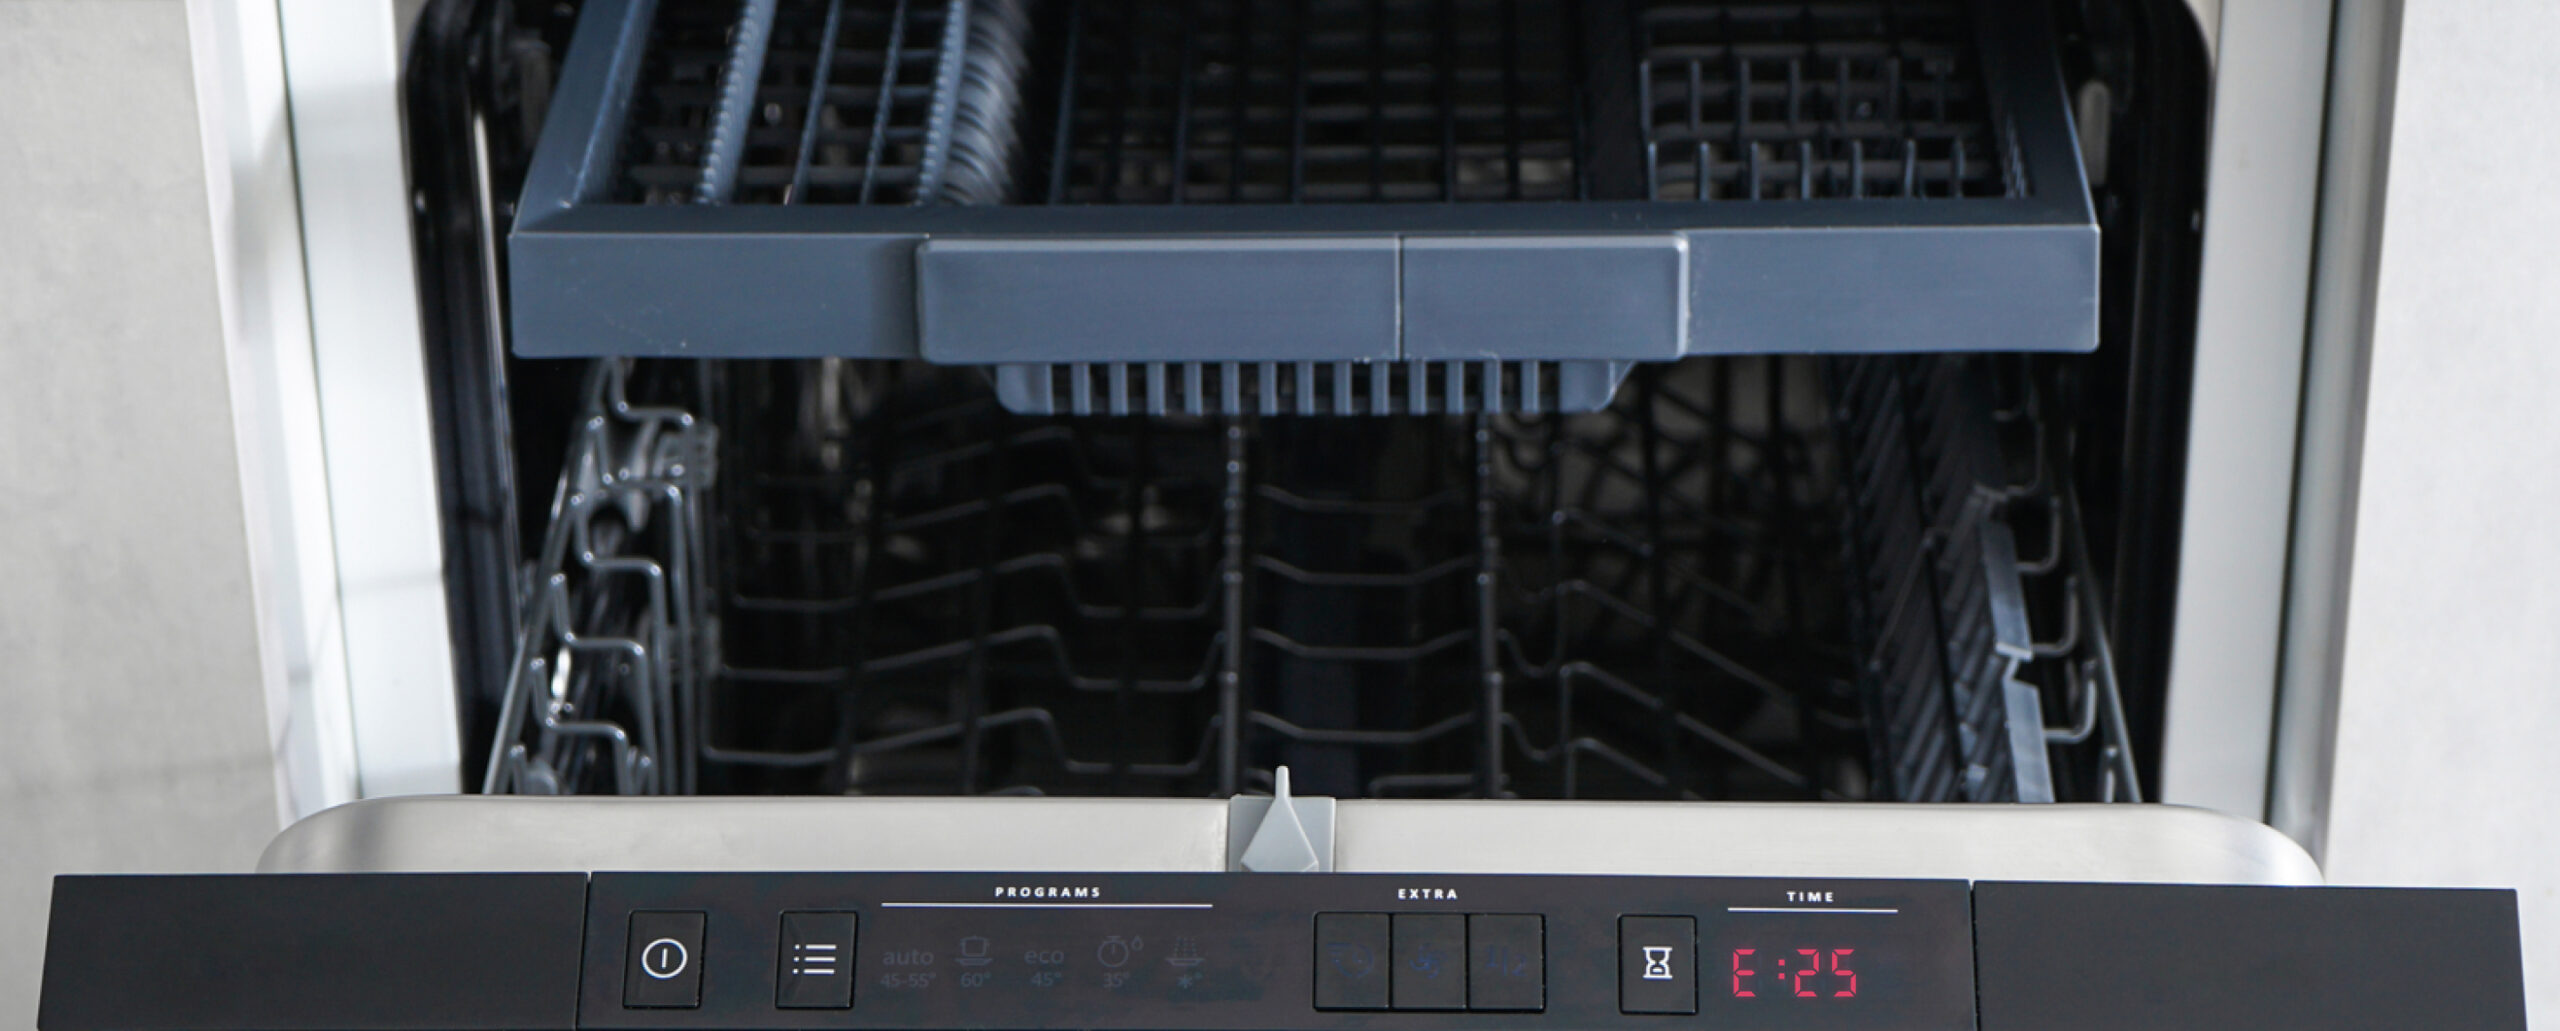 Frigidaire dishwasher error codes